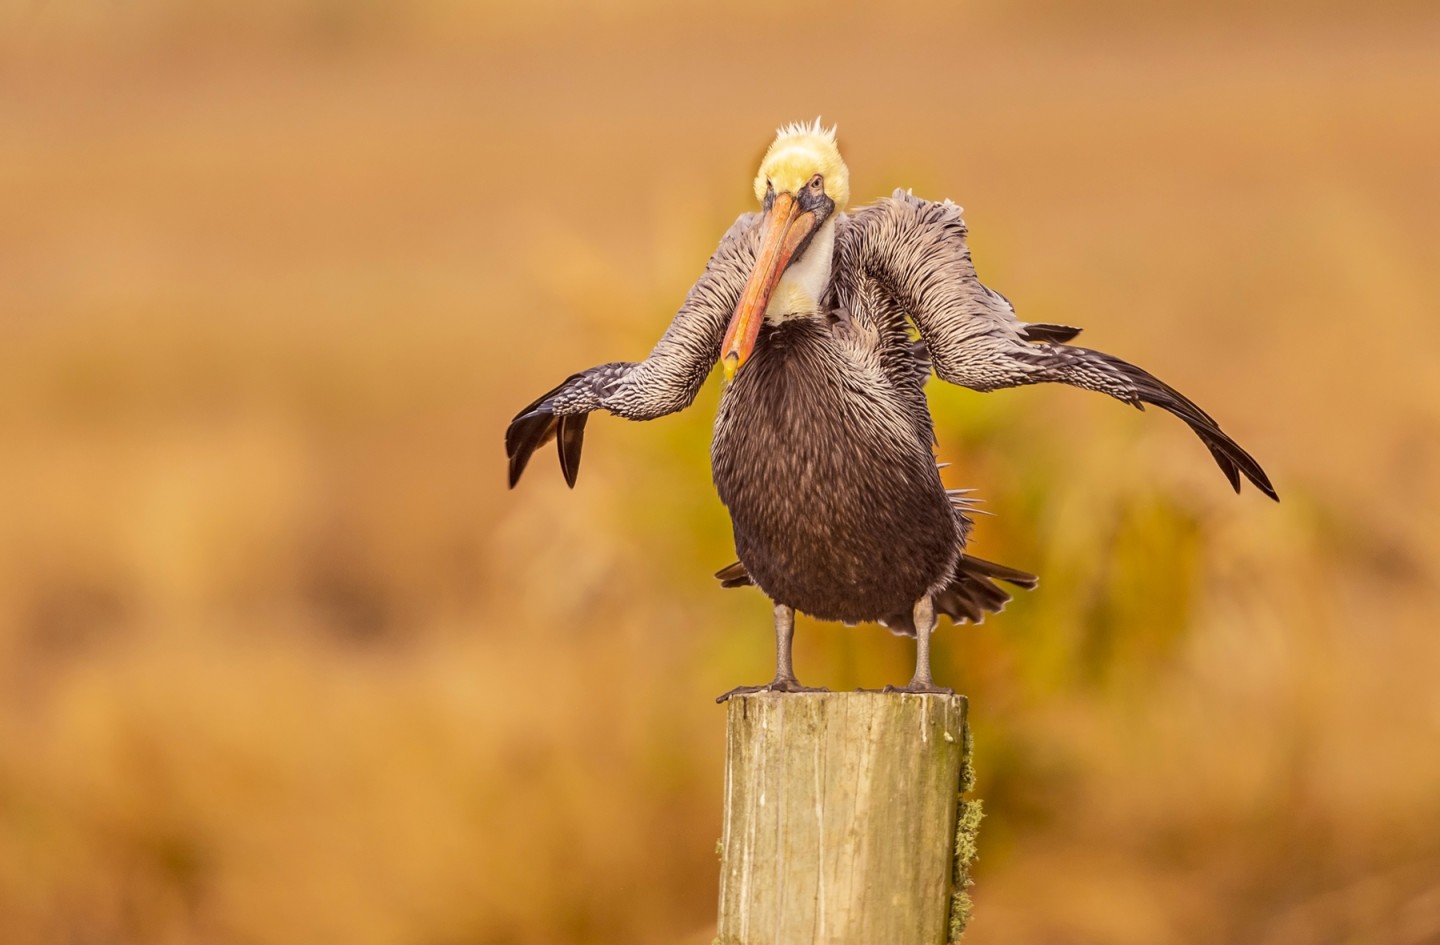 "Отряхиваясь от 2020 года". (Американский бурый пеликан, Южная Луизиана, США). Фото: © Dawn Wilson / Comedy Wildlife Photography Awards 2021